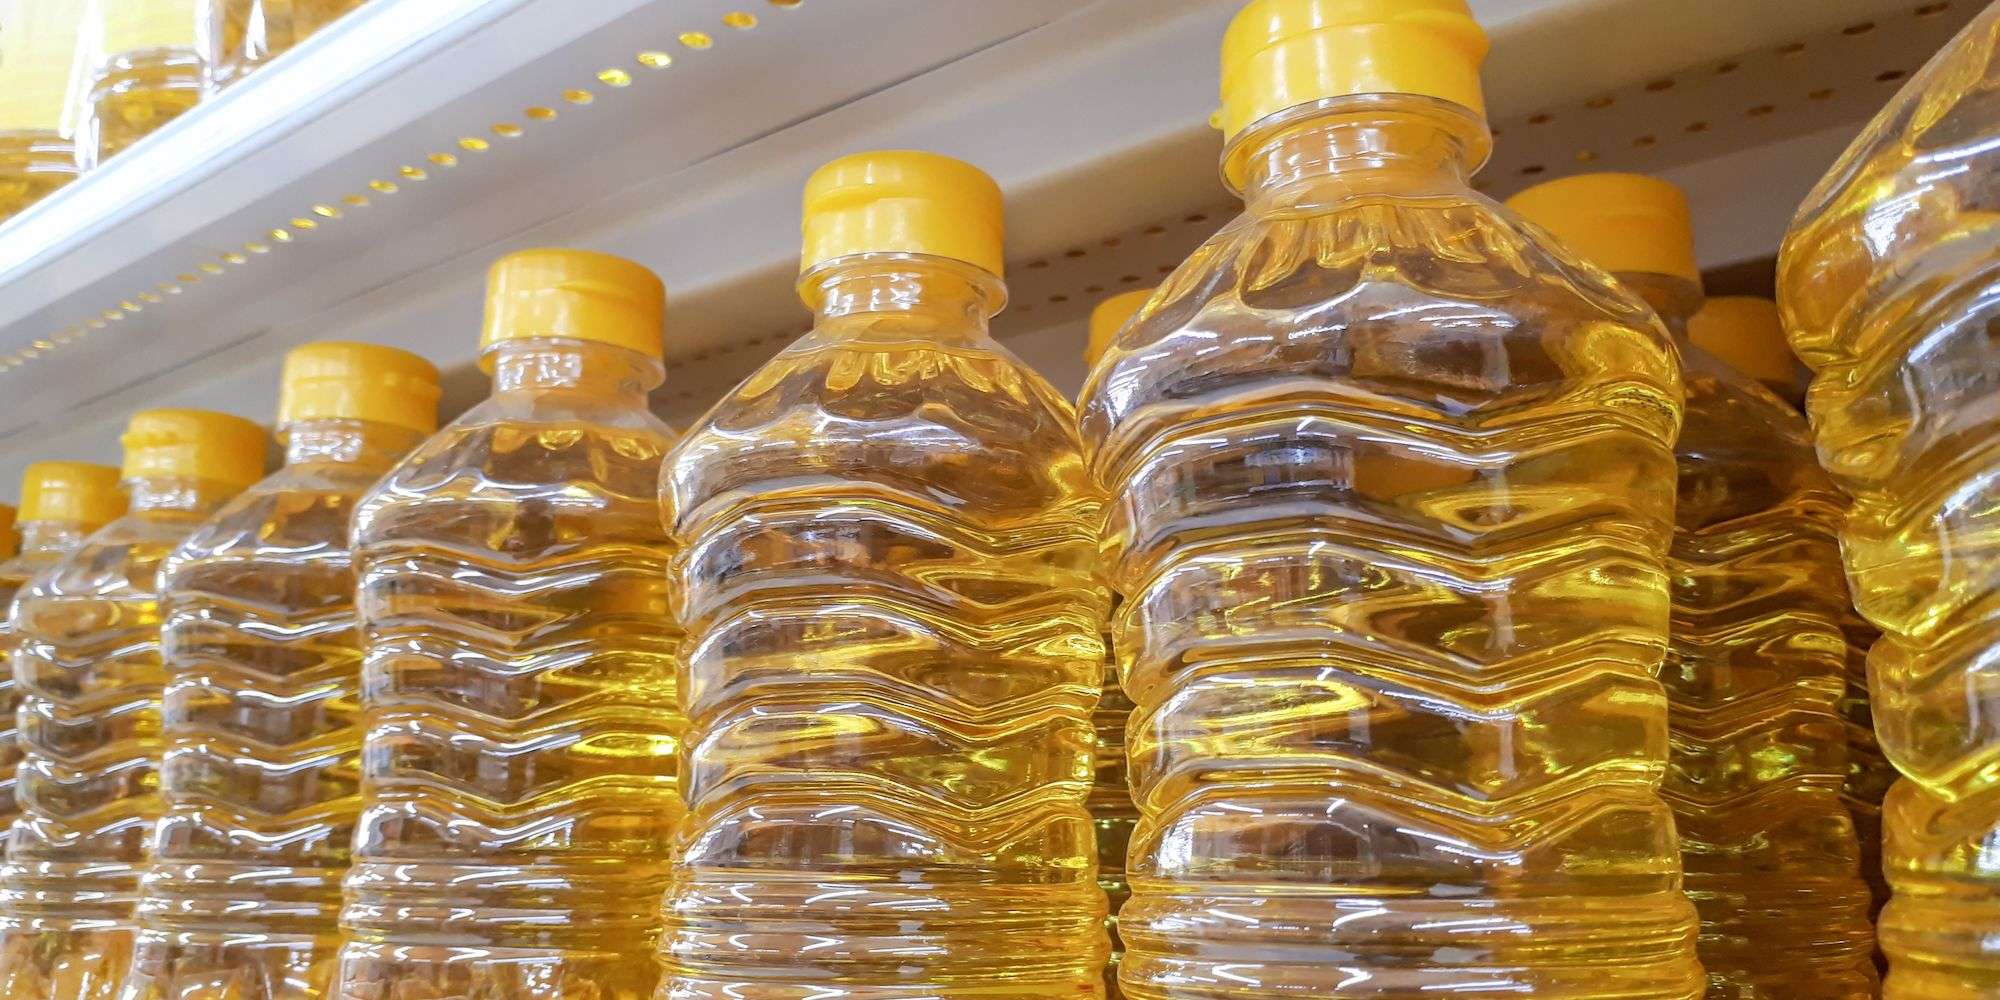 Bottles of vegetable oil on a shelf